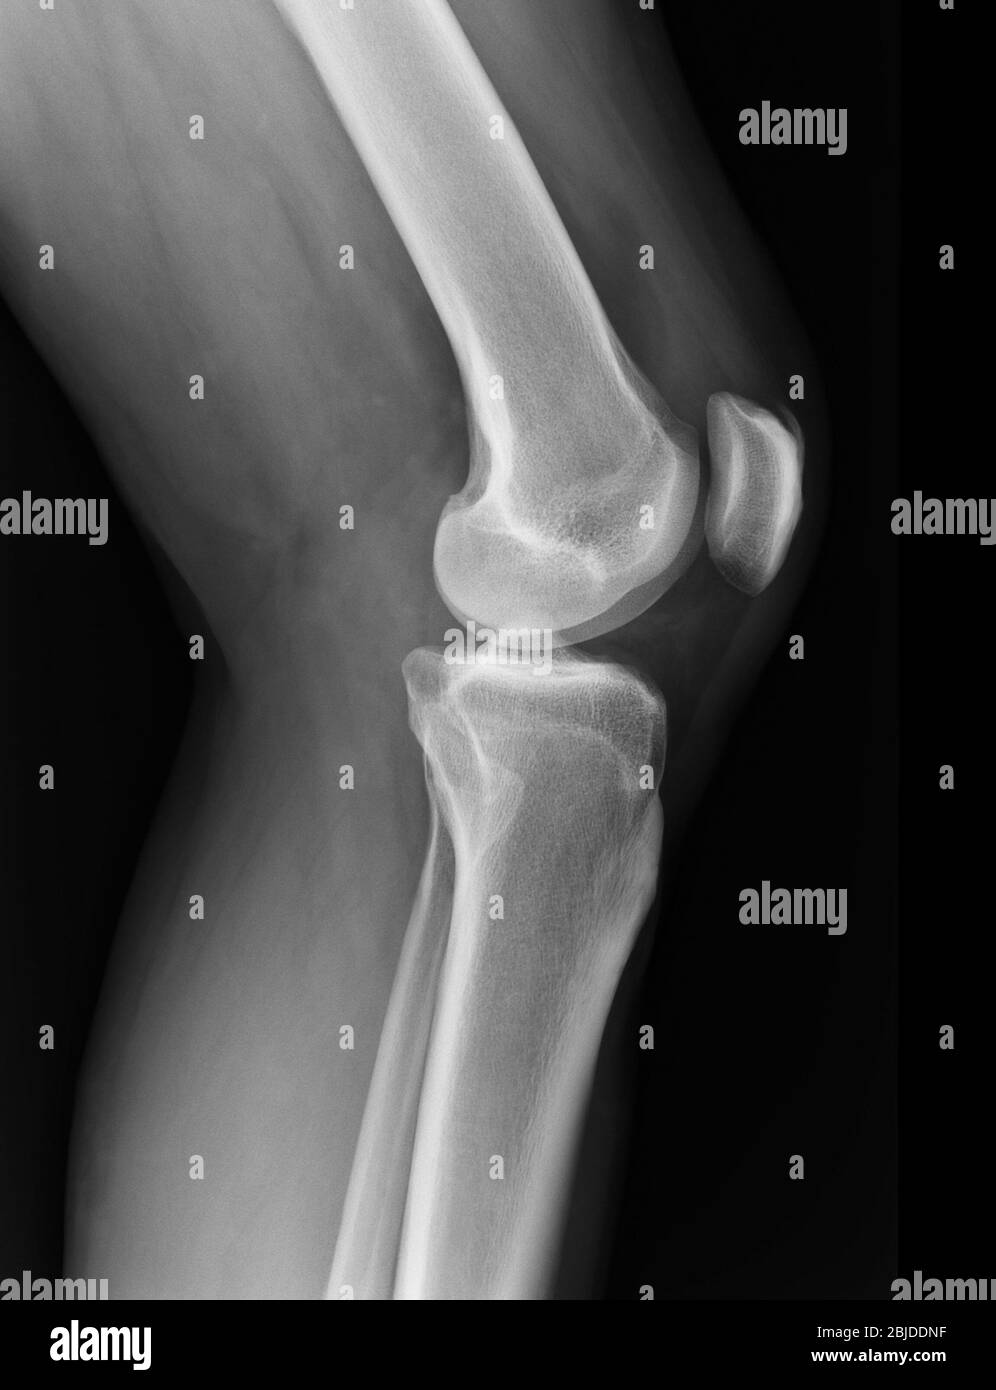 La radiographie du genou à rayons X montre l'état de blessure Banque D'Images